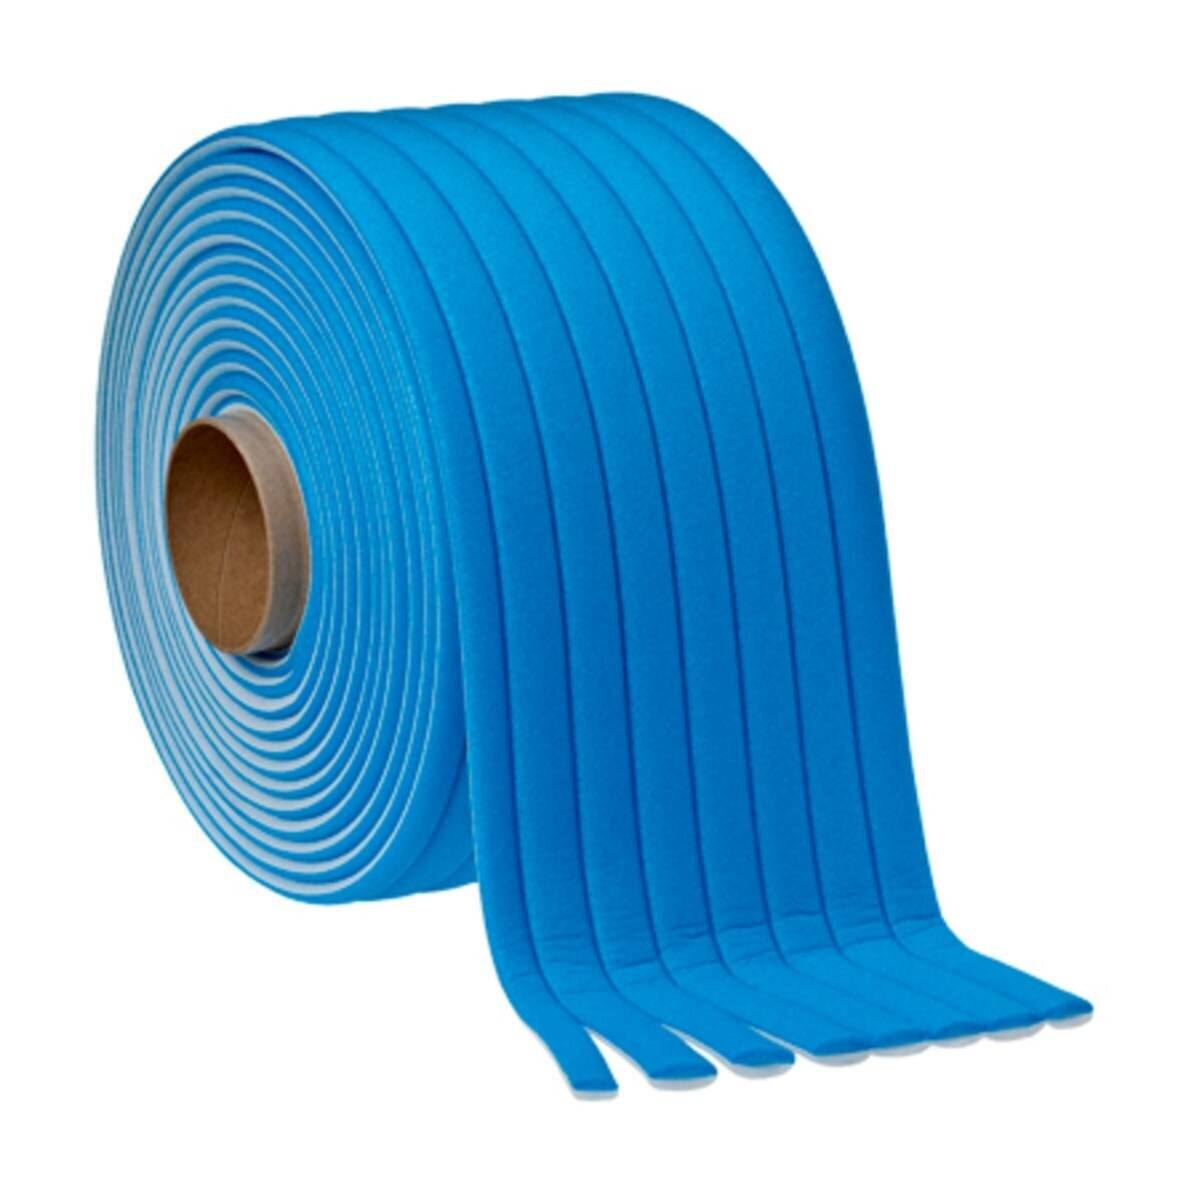 3M Cinta adhesiva de espuma con bordes suaves PLUS, azul, 21 mm x 49 m, 50421